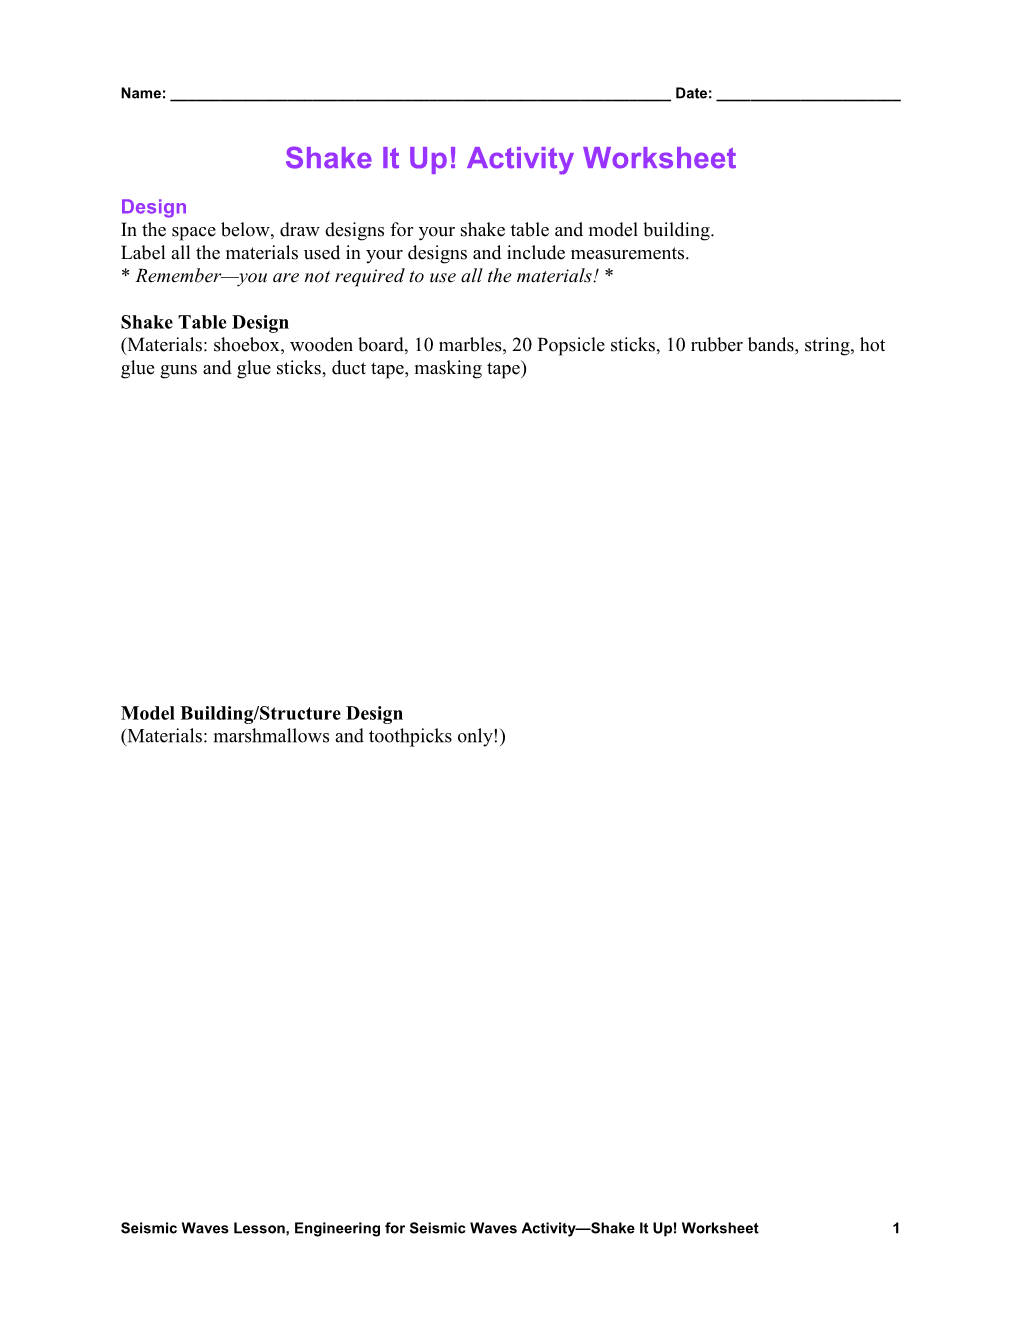 Shake It Up! Activity Worksheet